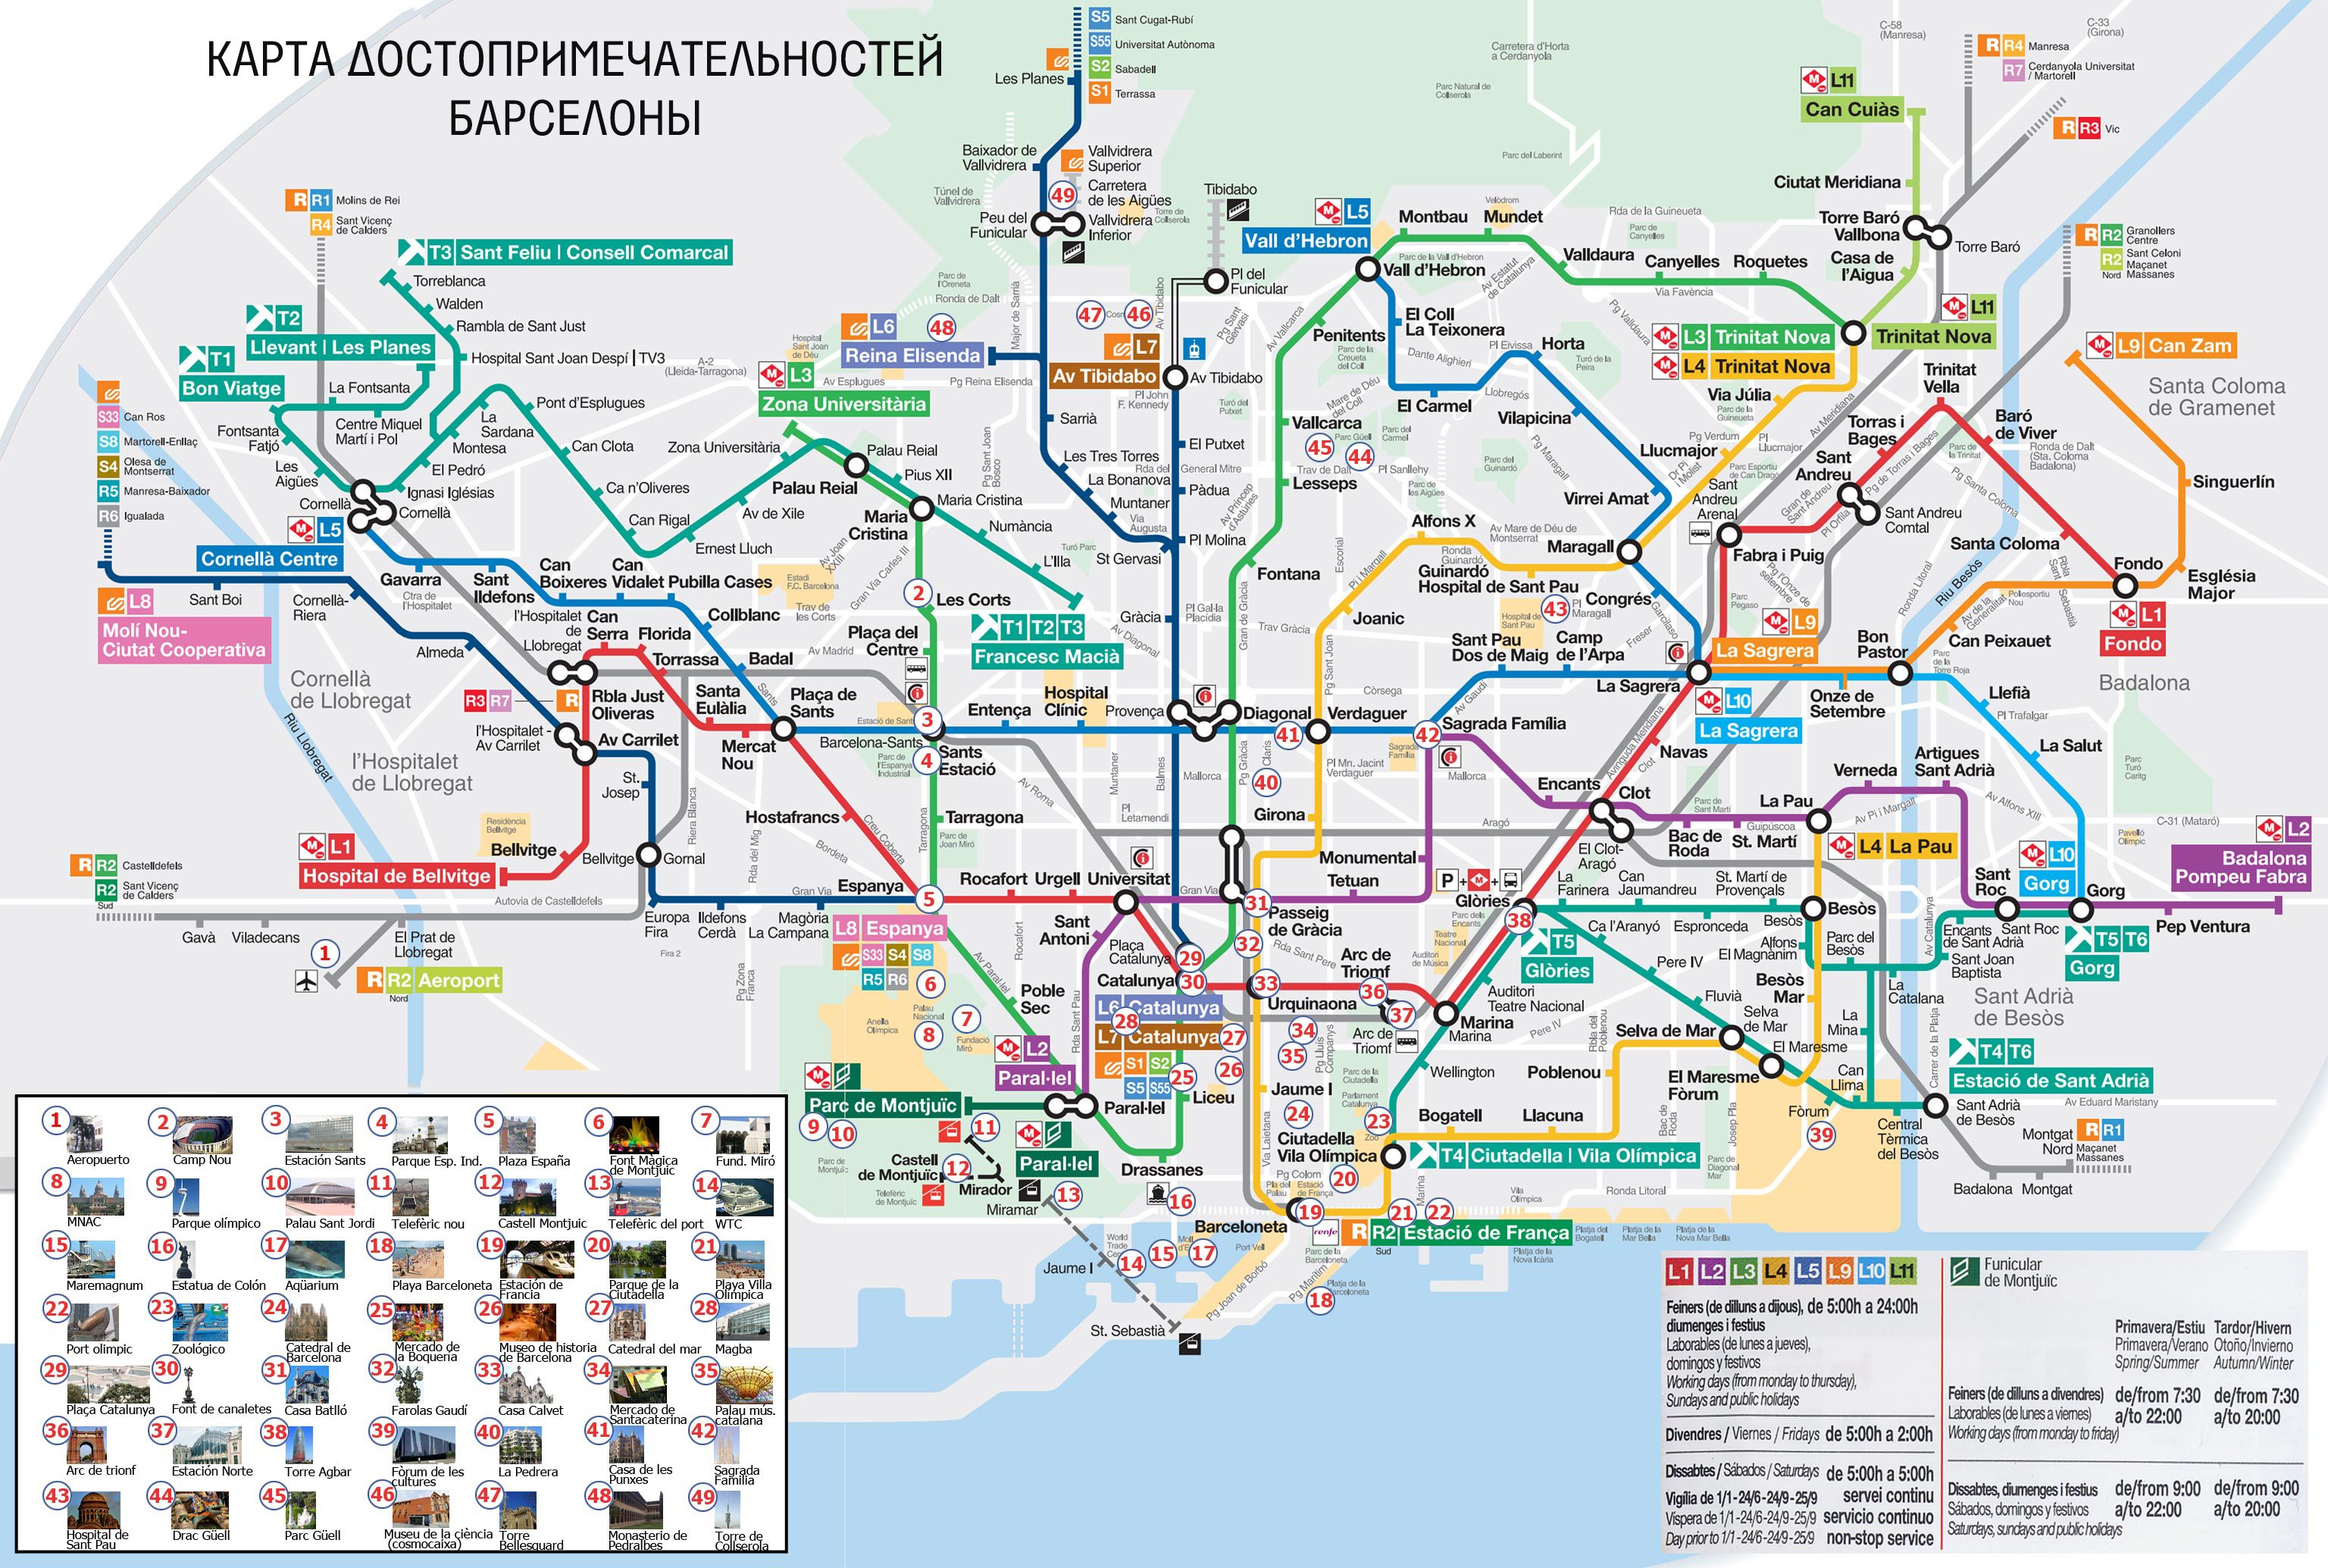 Karta Dostoprimechatelnostej Barselony Na Russkom Yazyke Putevoditel Barselona Tm [ 2069 x 3072 Pixel ]